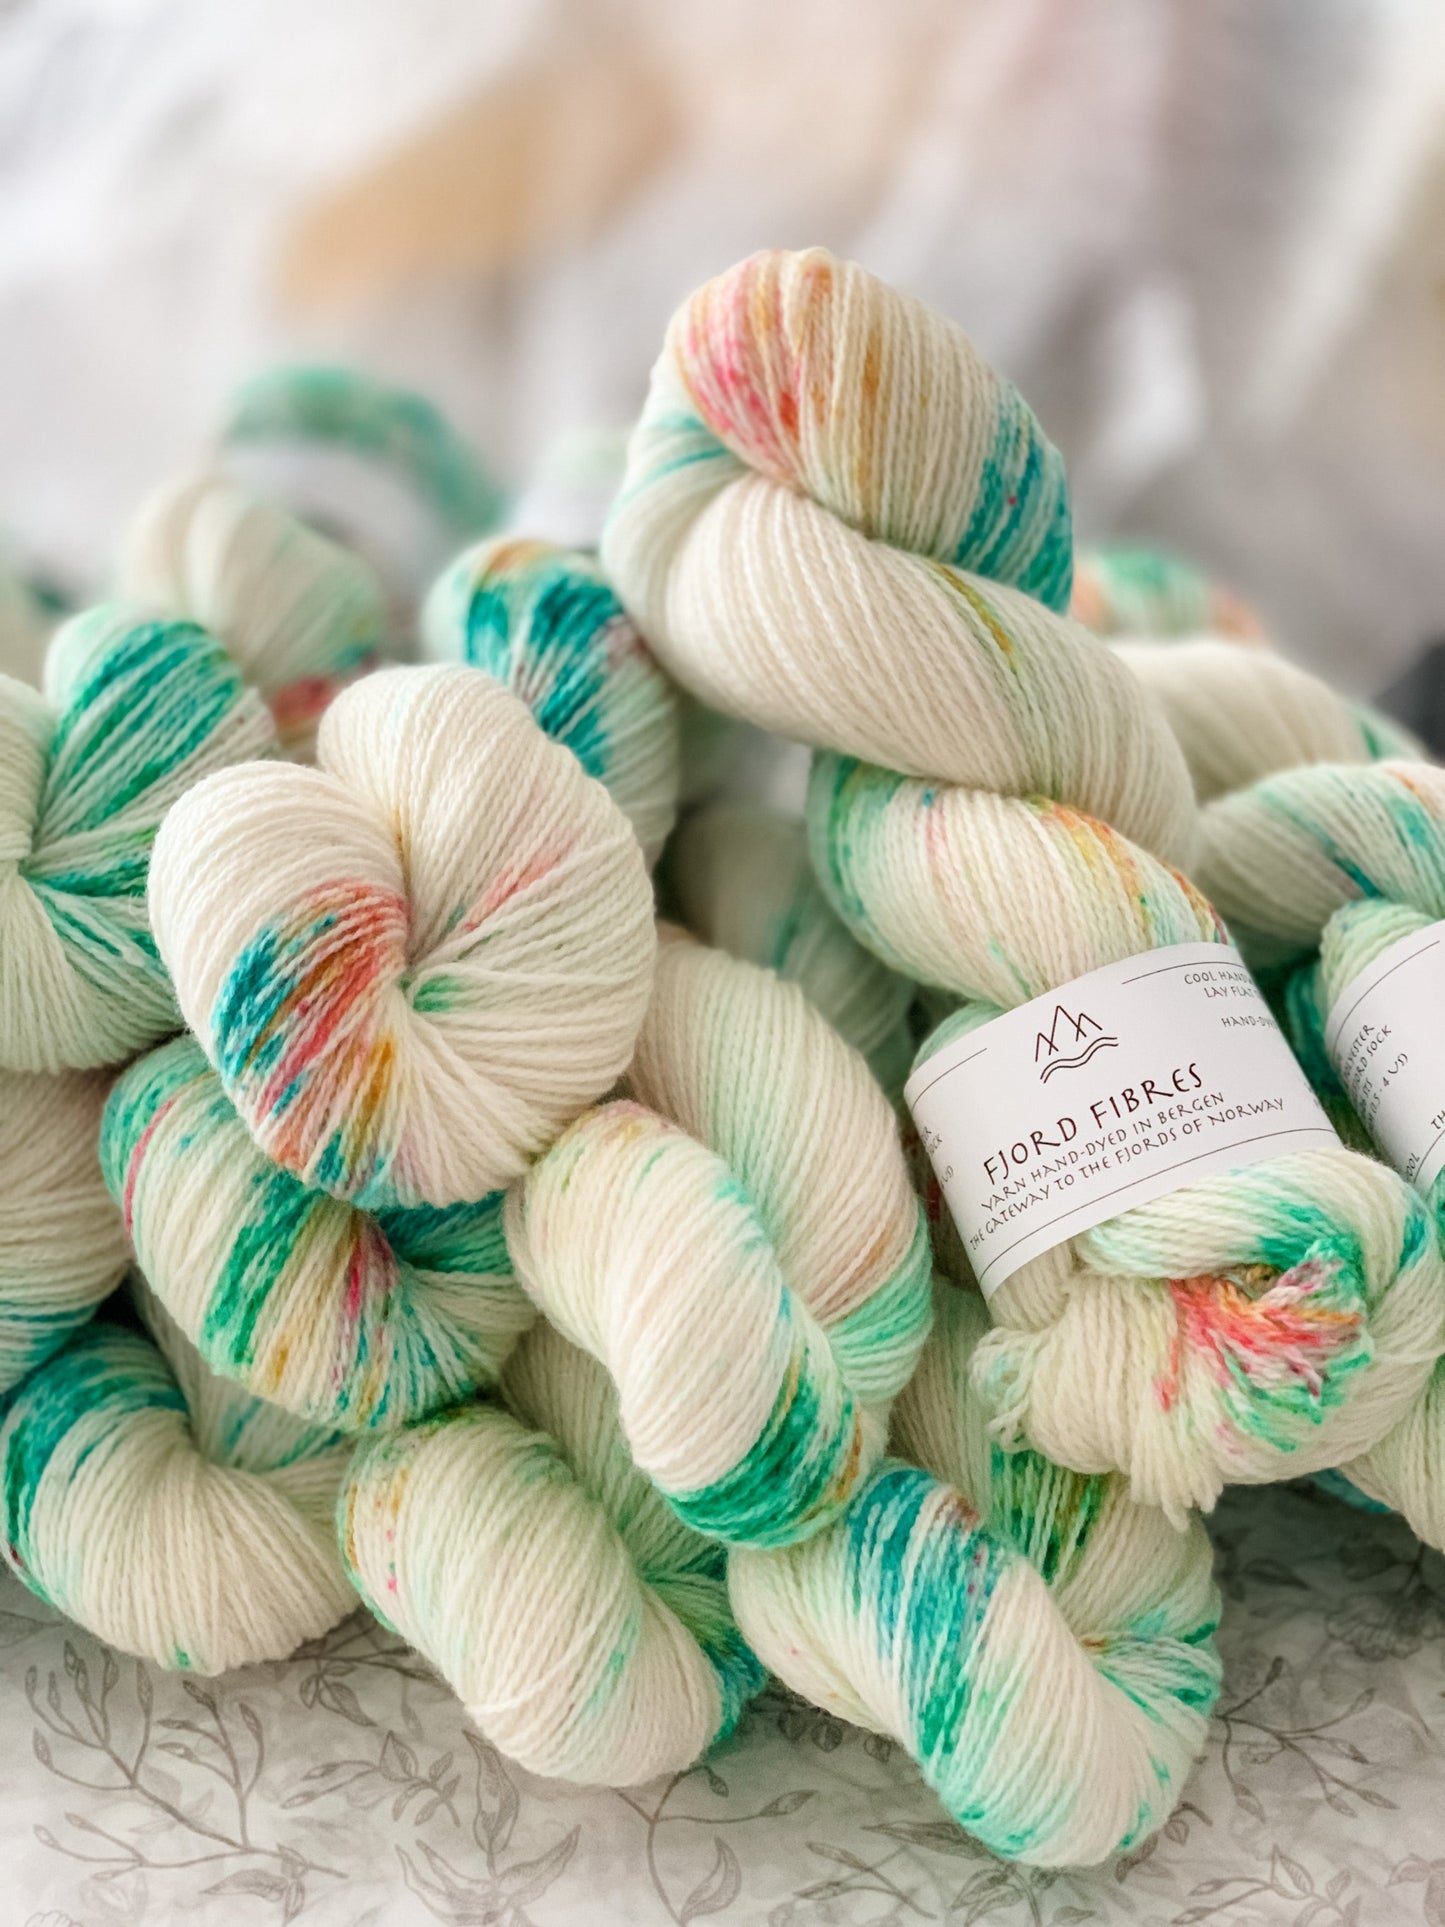 Cupcake Spinkles - Trollfjord sock - Hand Dyed Yarn - Variegated Yarn